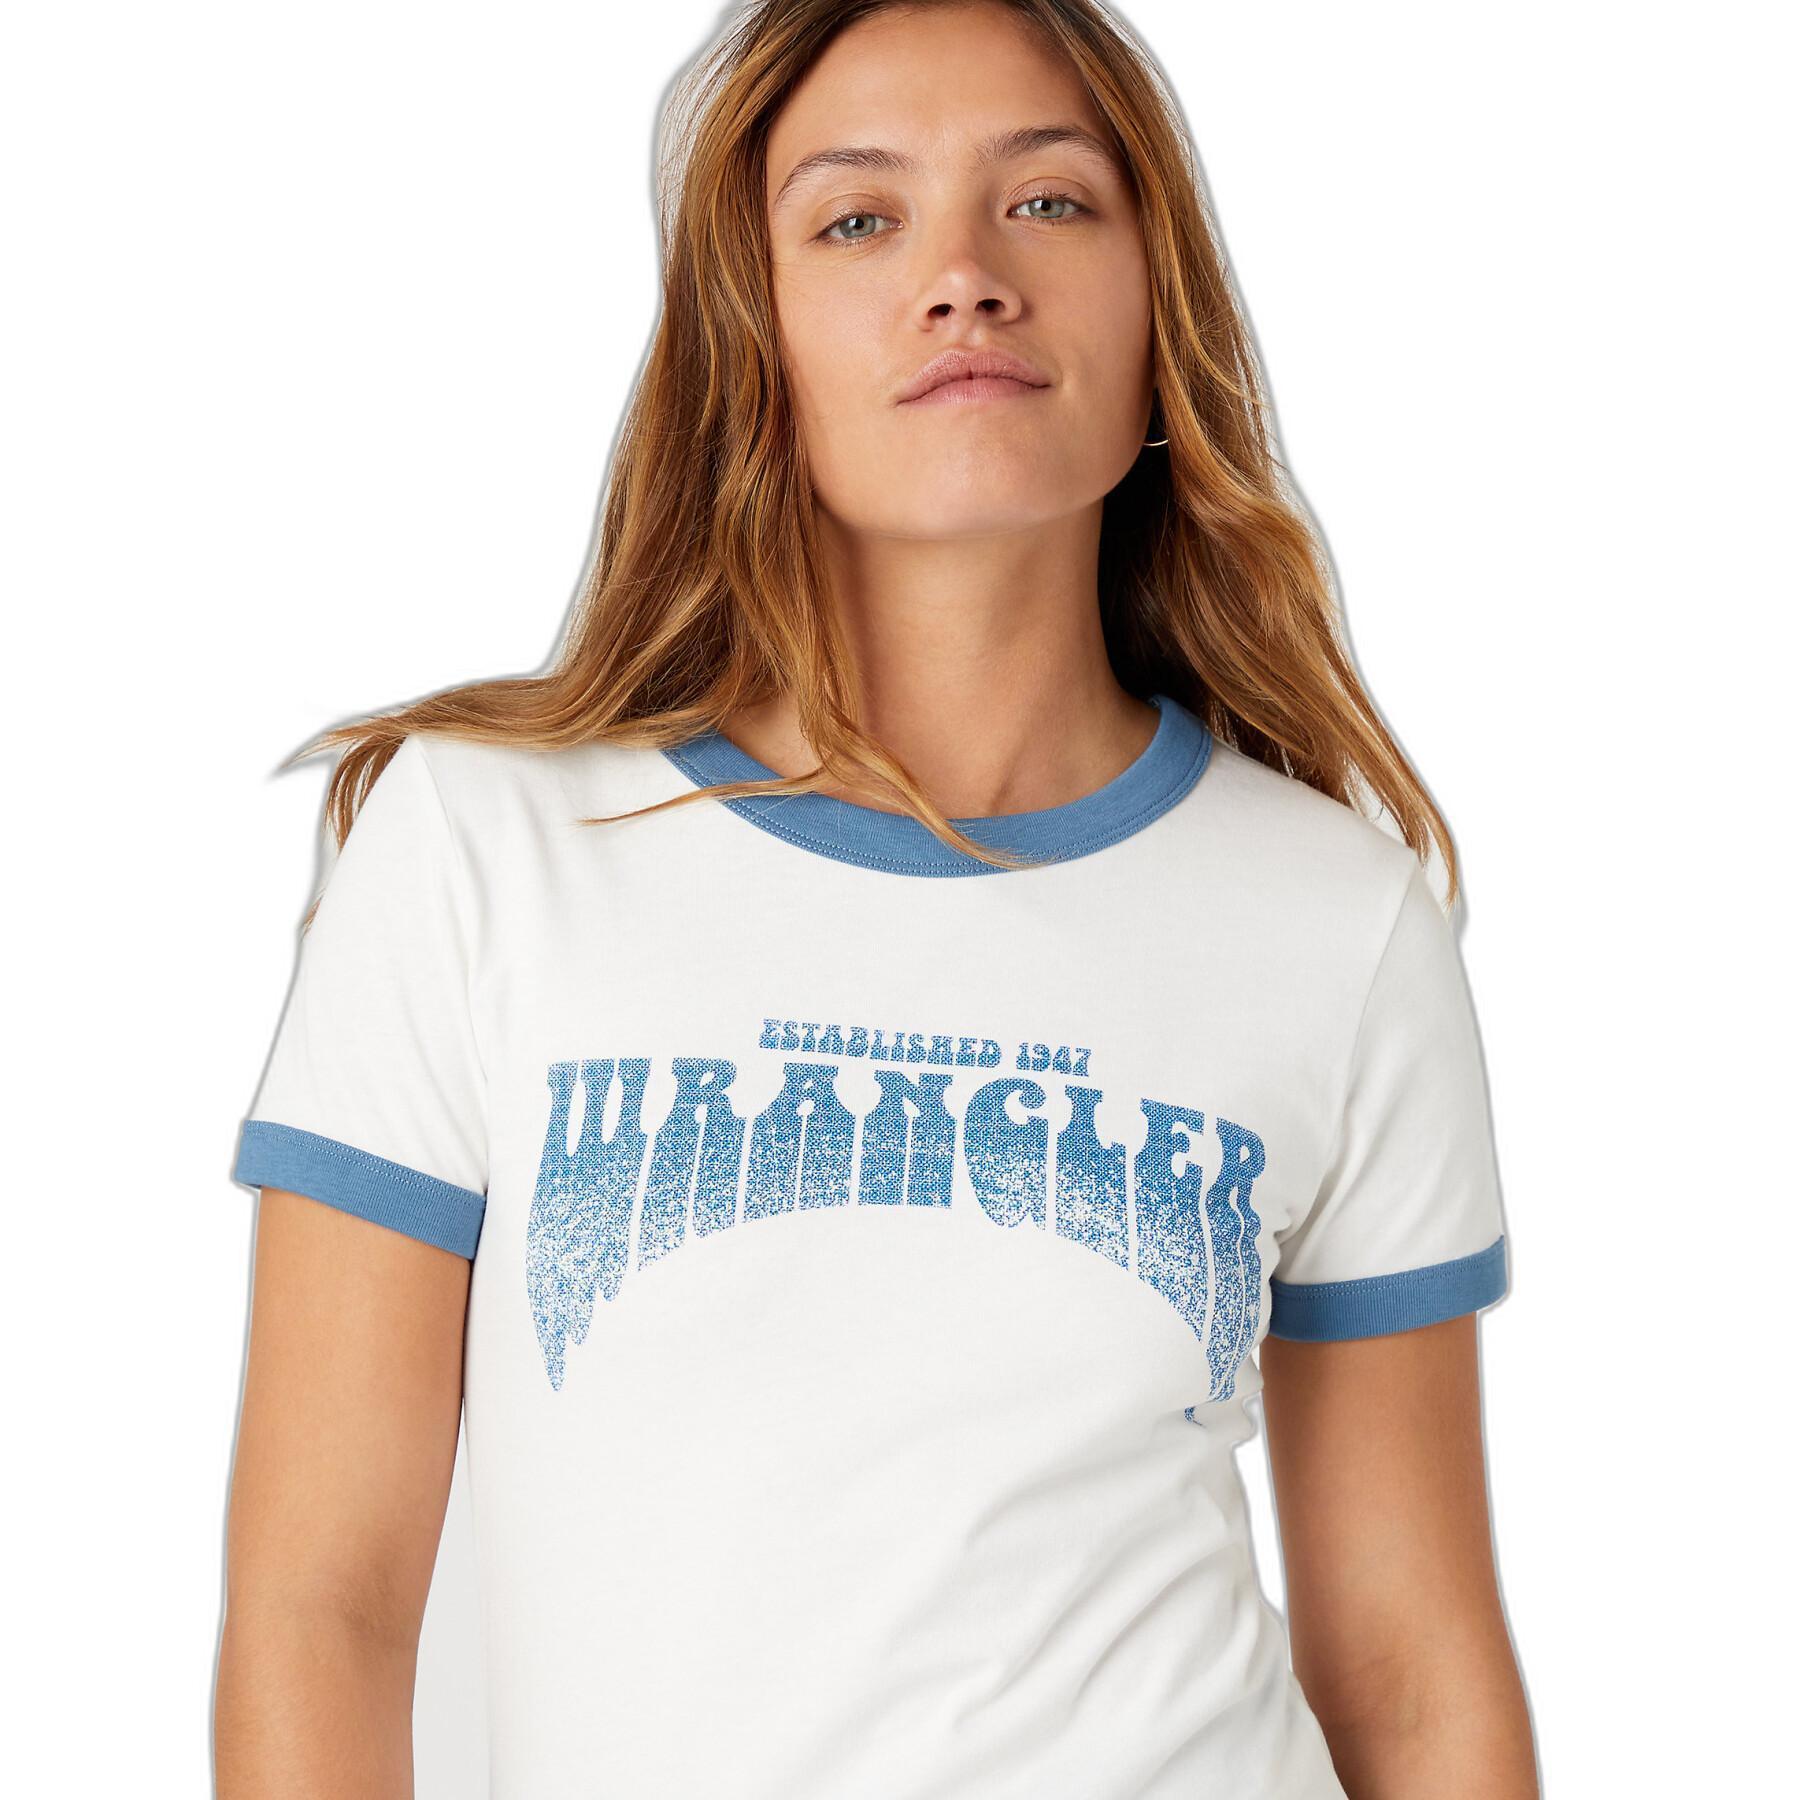 Camiseta de mujer Wrangler Ringer